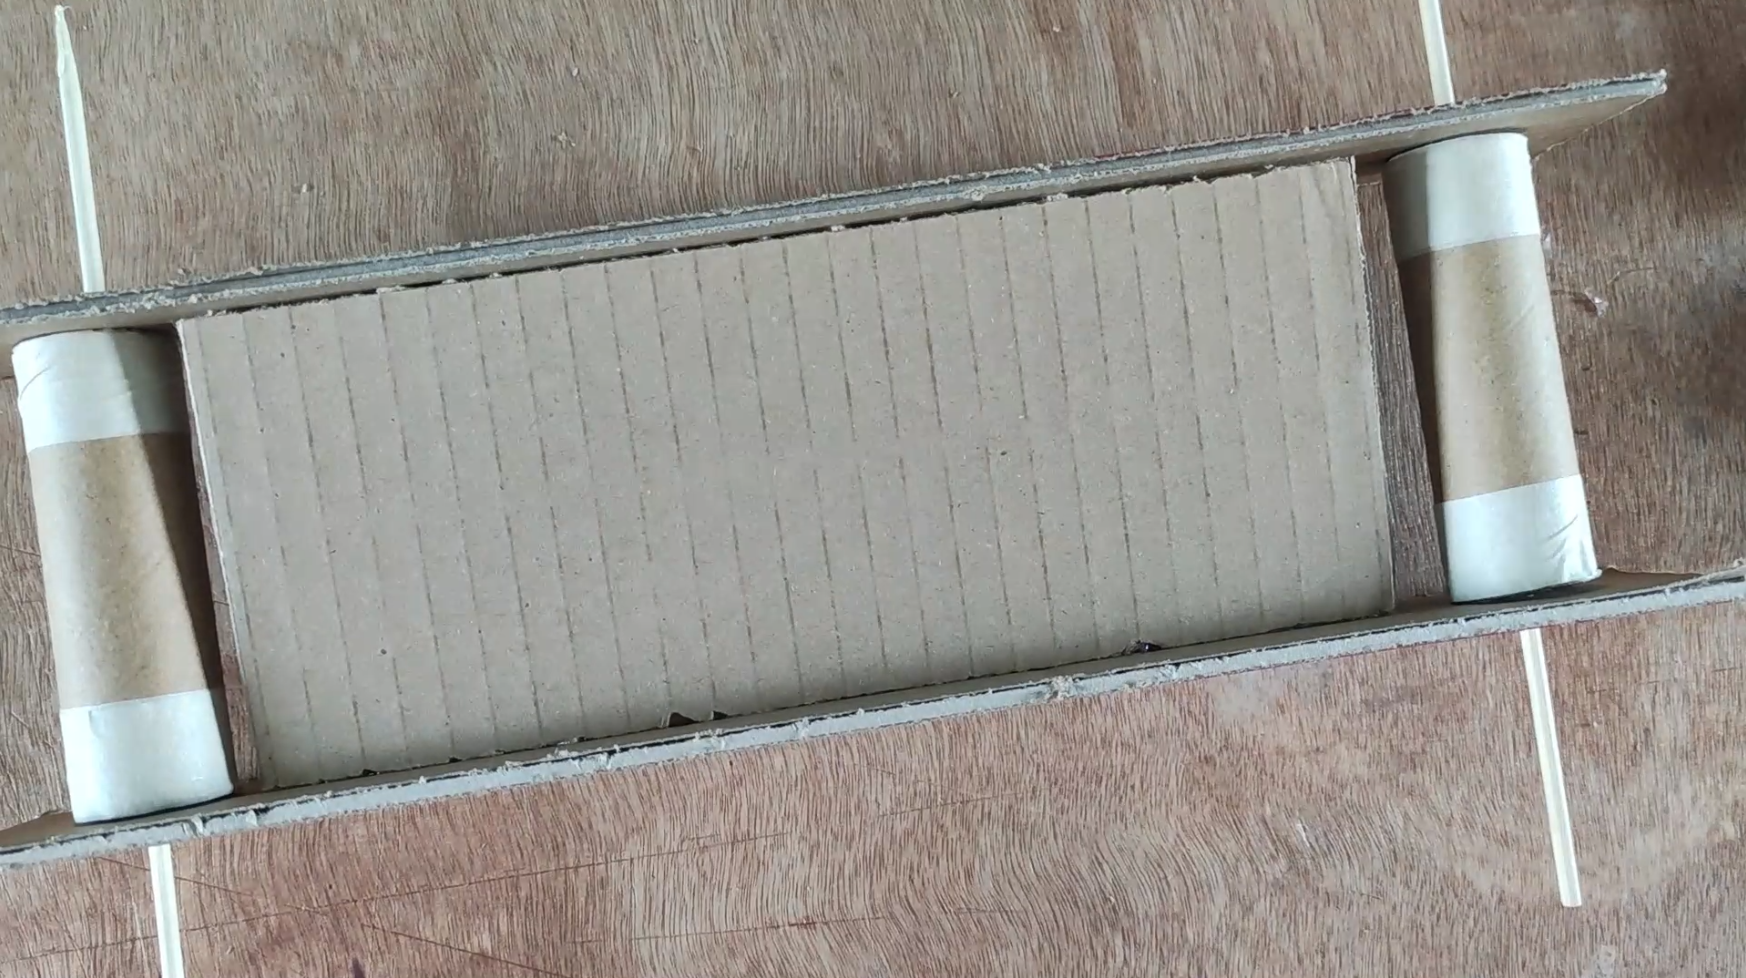 DIY - Cardboard Conveyor - Middle